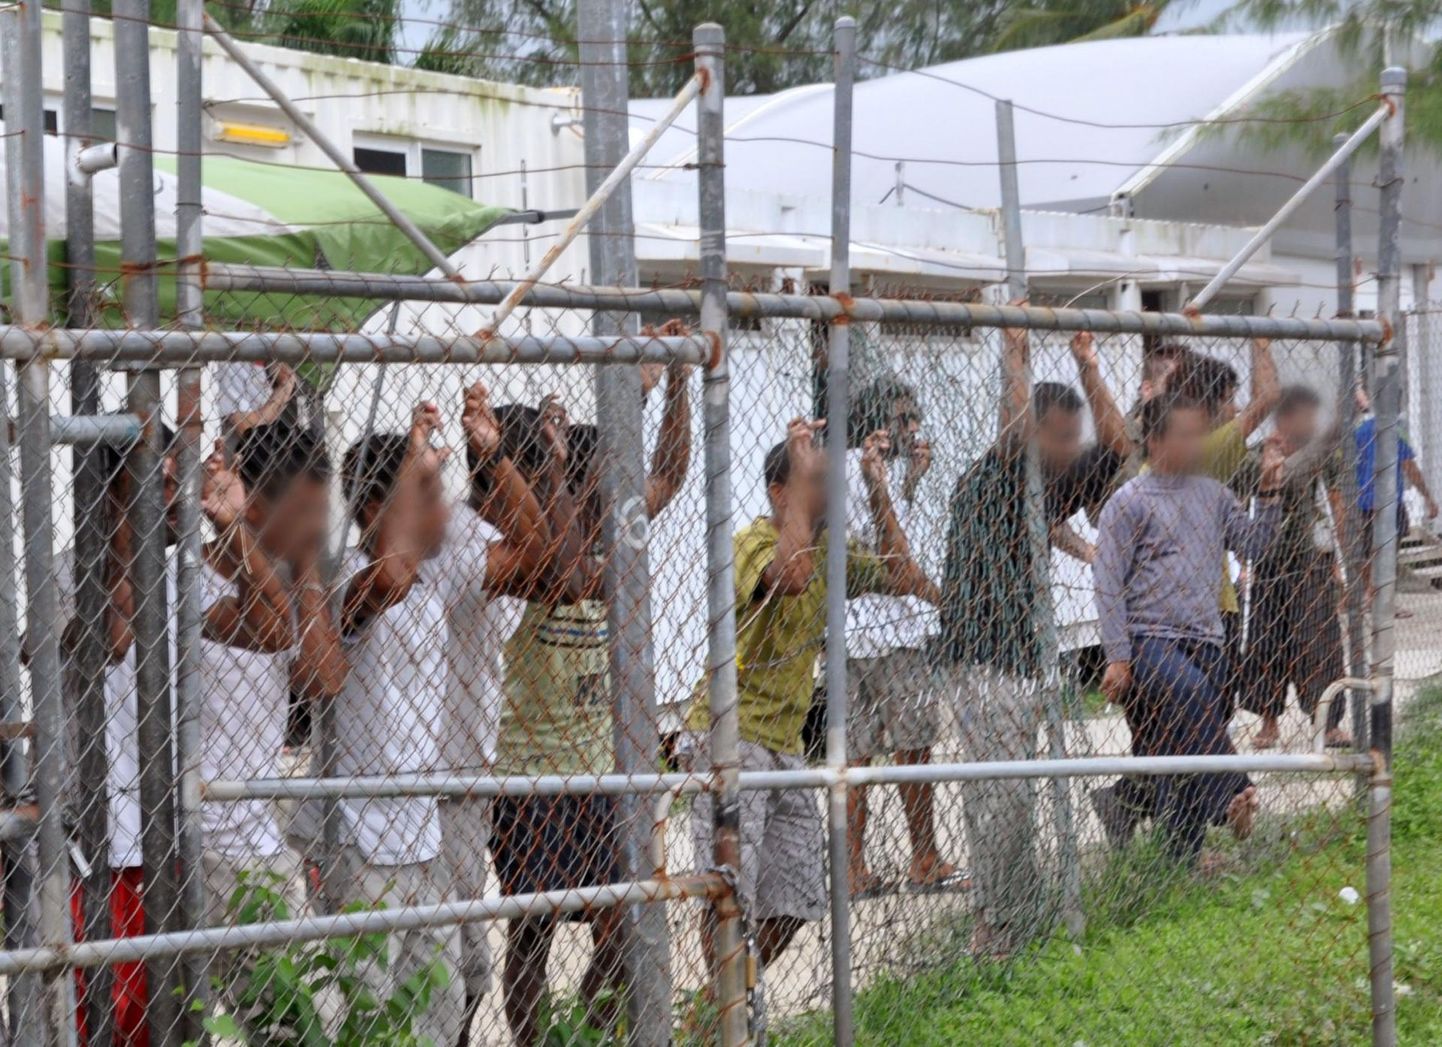 Austraaliasse jõuda lootnud paadipõgenikud 2014. aasta märtsis naaberriigile Paapua Uus-Guineale kuuluval Manuse saarel asunud põgenikekeskuses. Mullu novembris suletud kinnipidamisasutus paistis silma kehvade elamistingimuste poolest.